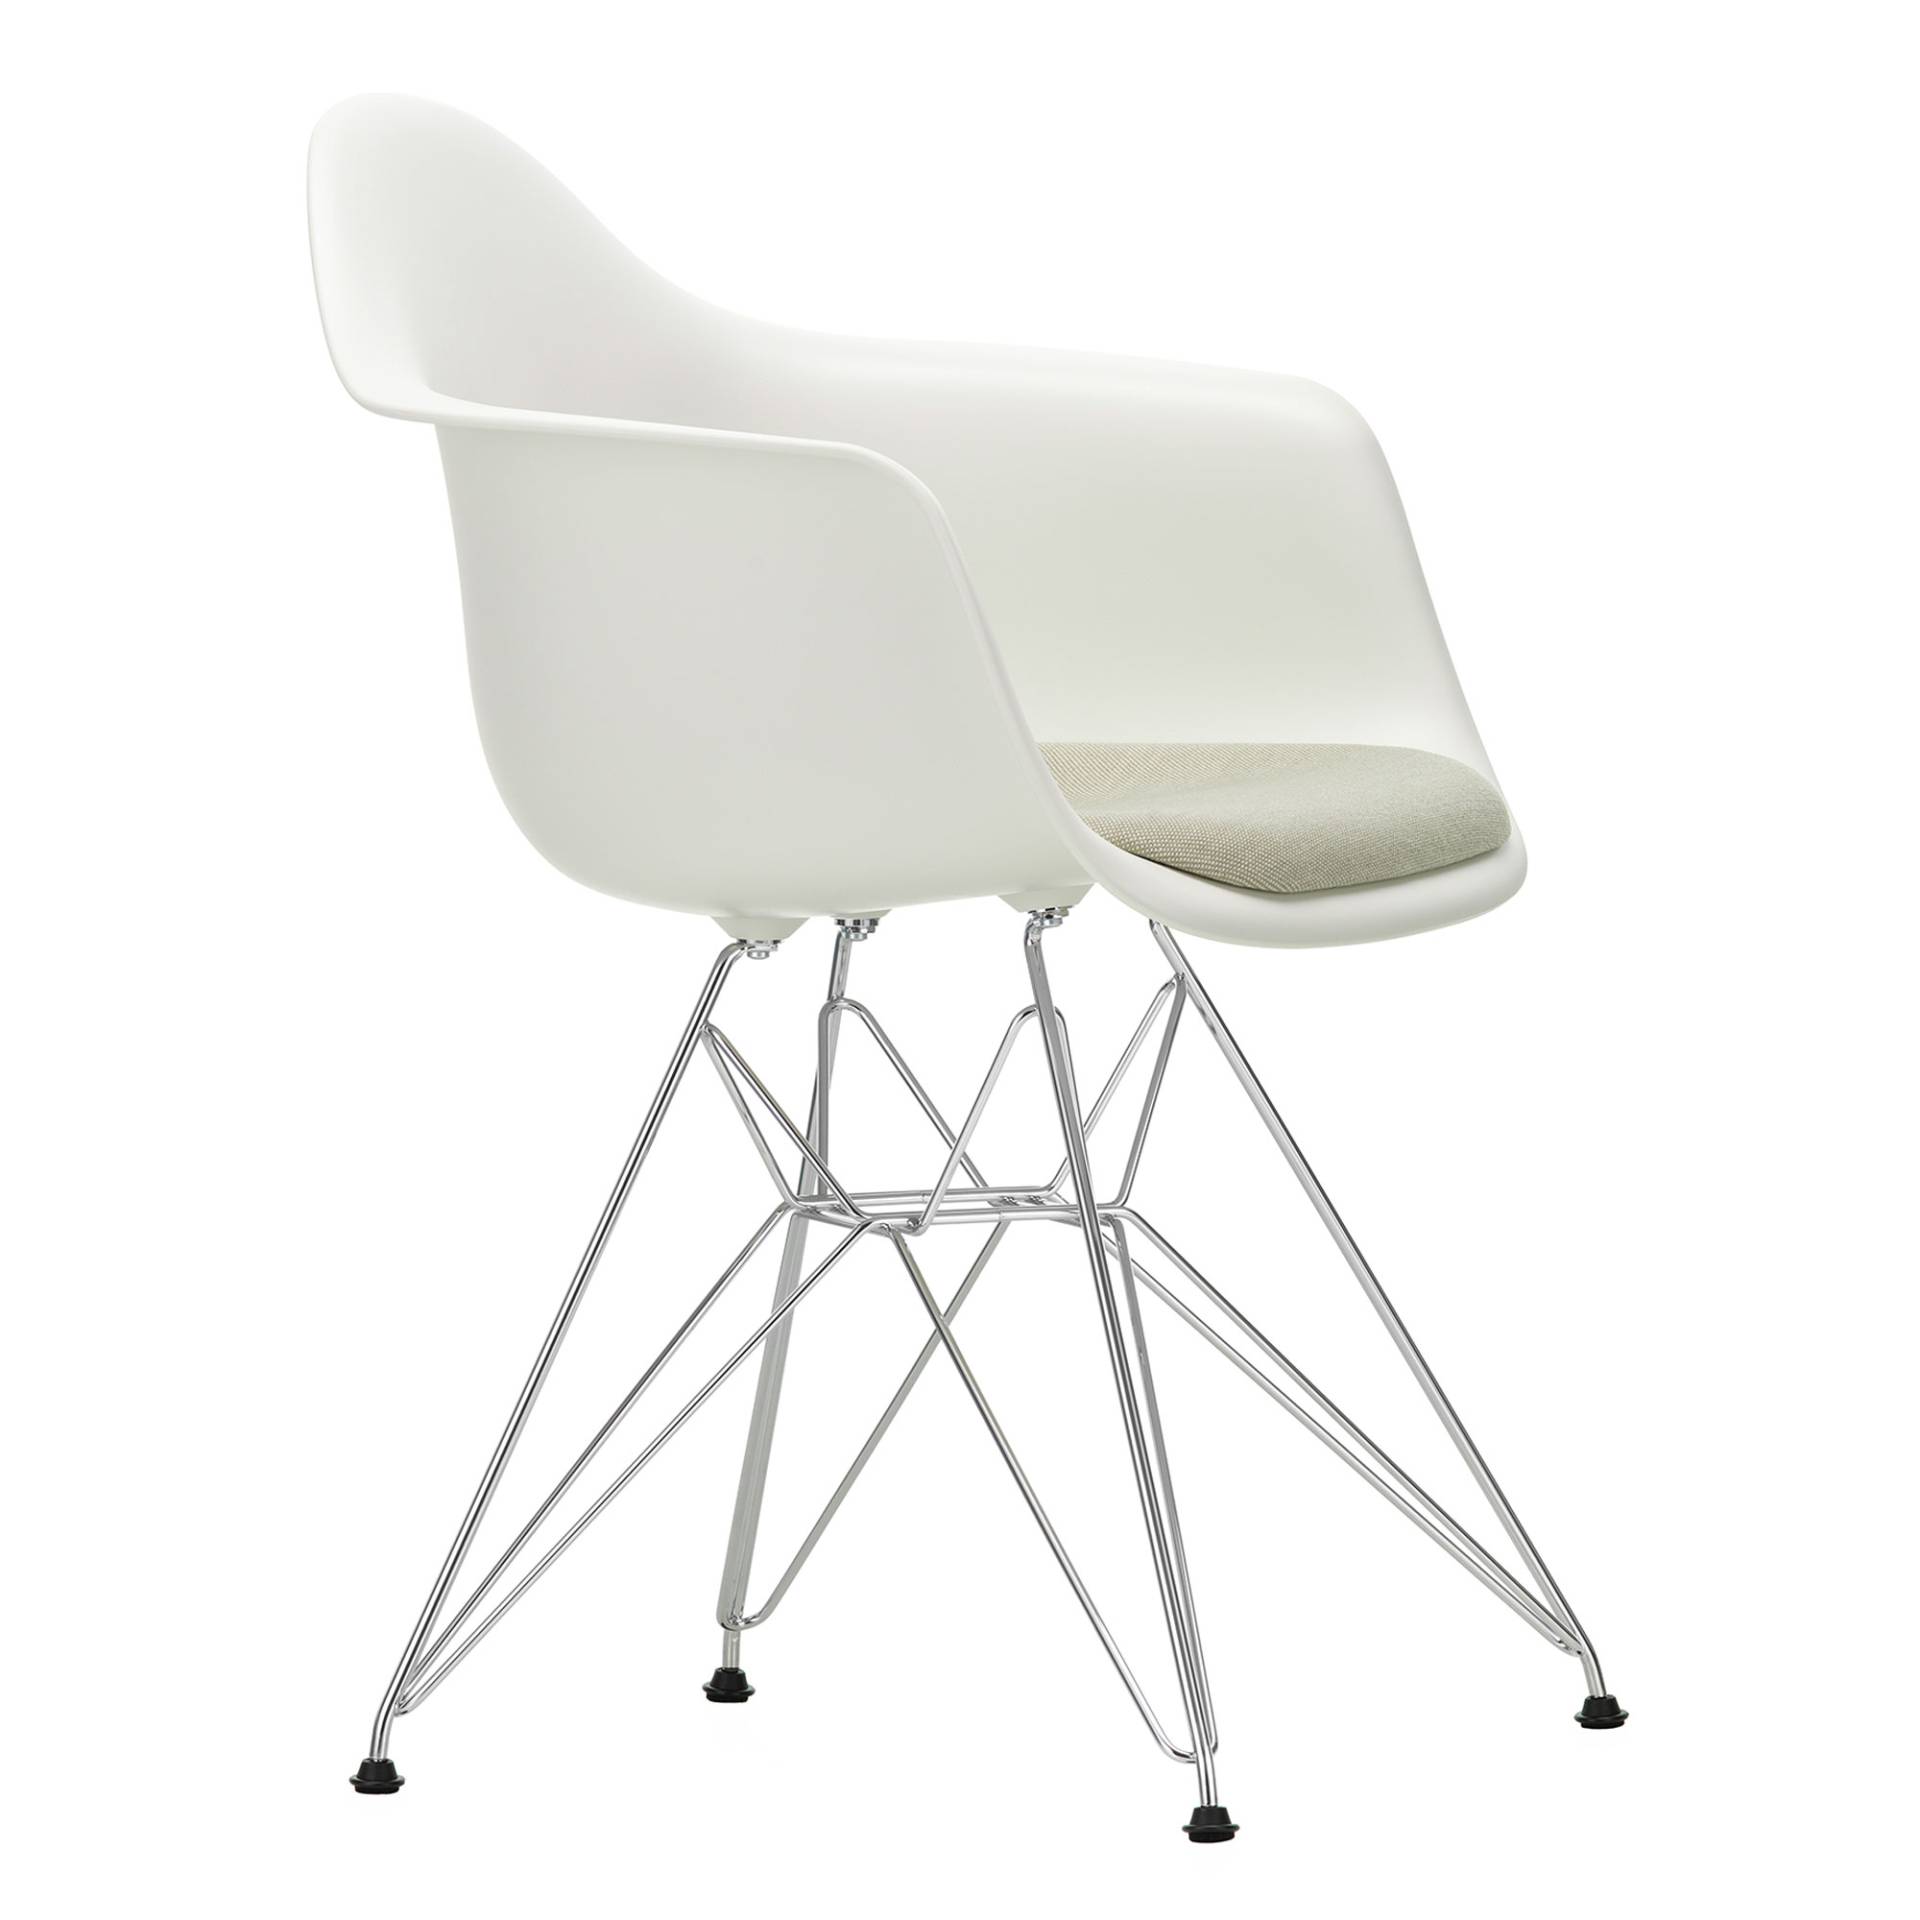 Vitra - Eames Plastic Armchair DAR gepolstert verchromt - weiß/Hopsak 79 warmgrey/ivory/Eiffelturmgestell verchromt/mit Filzgleitern von Vitra